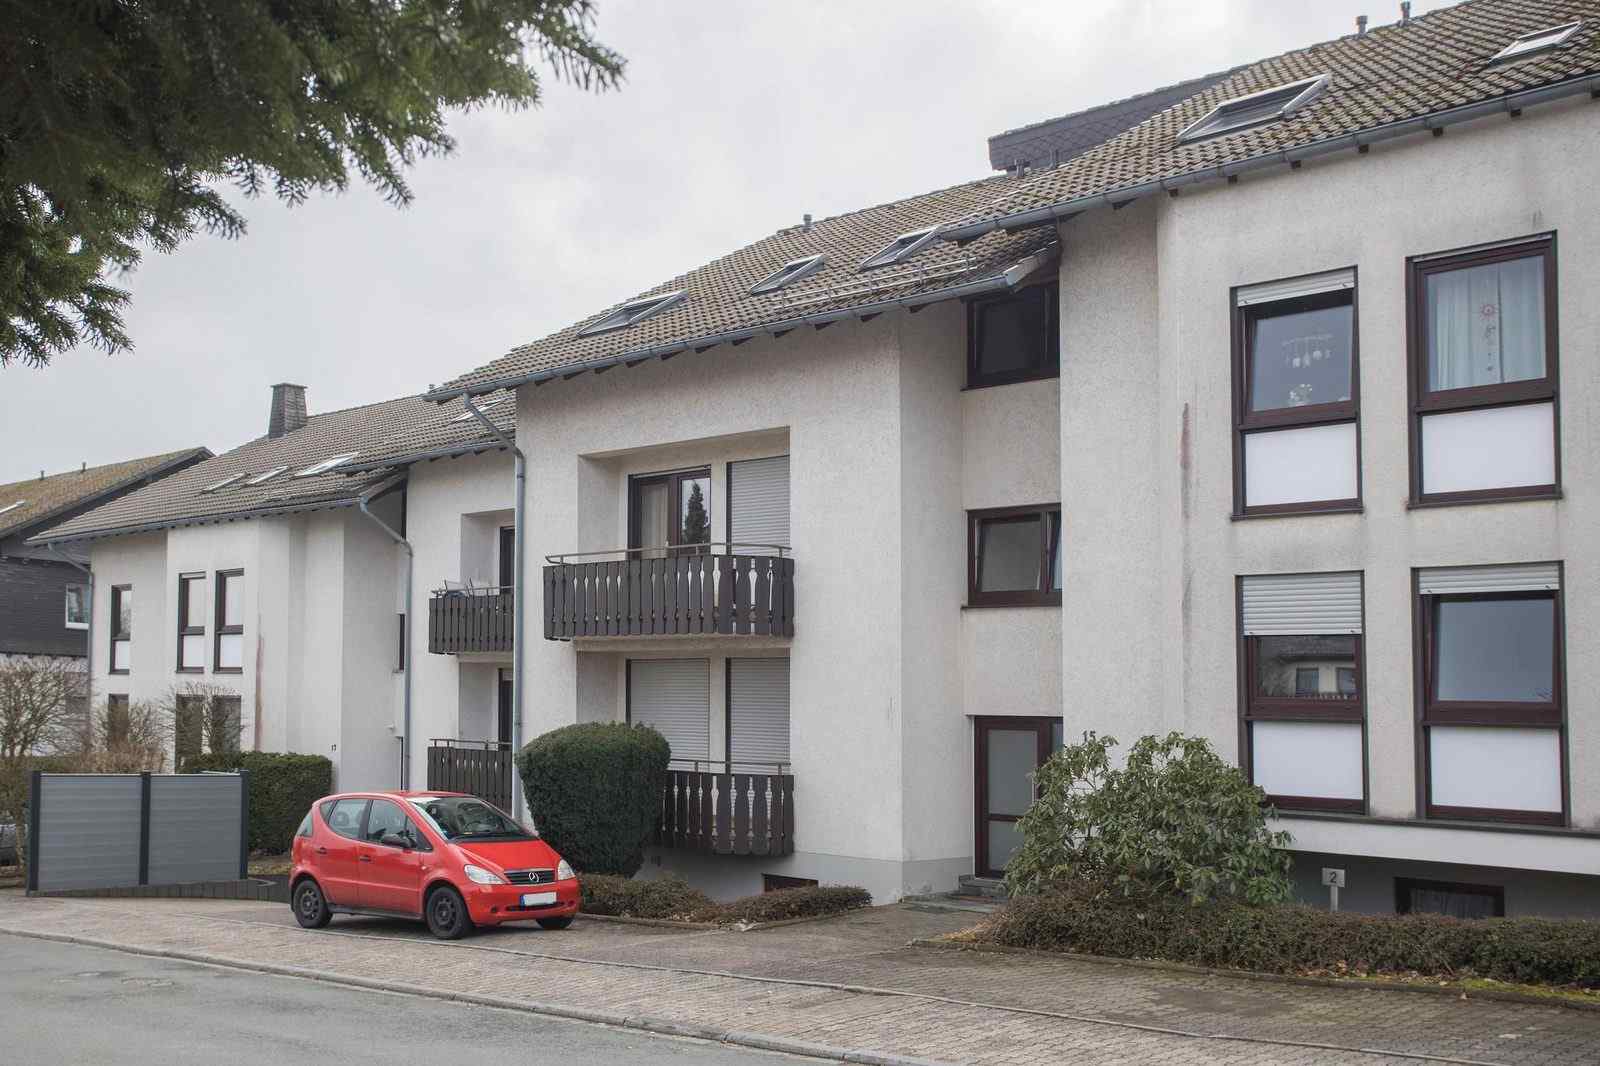 Ruim en modern appartement voor 4 personen in Winterberg - Duitsland - Europa - Winterberg